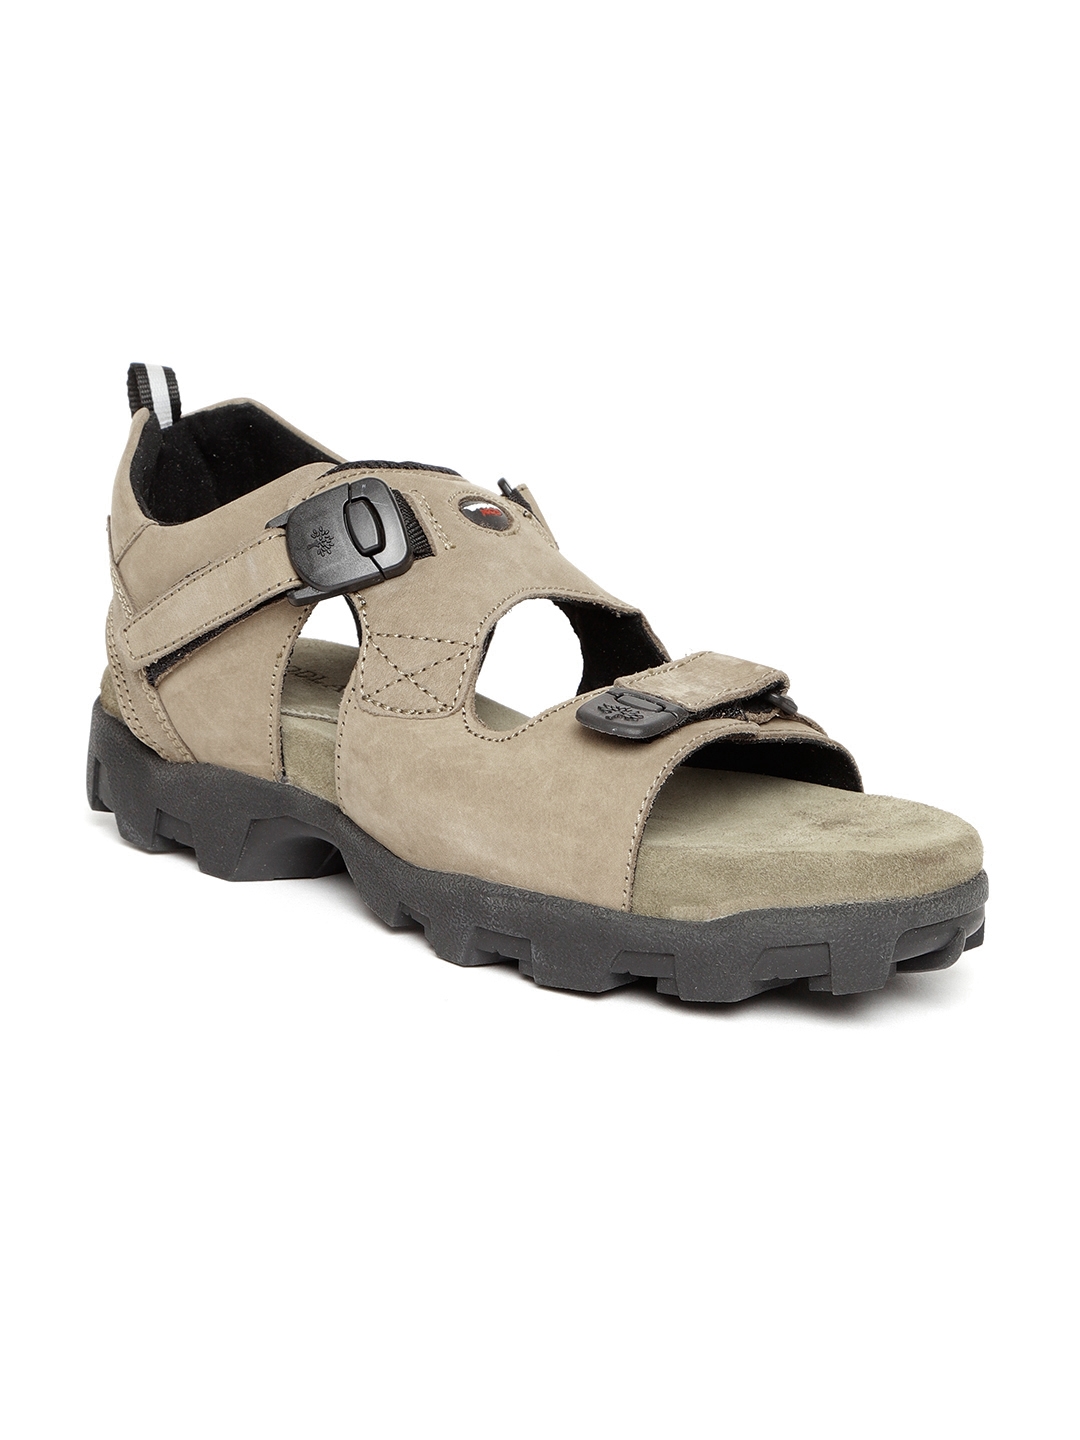 Buy Woodland Men Olive Green Leather Sandals - Sandals for Men 947145 |  Myntra